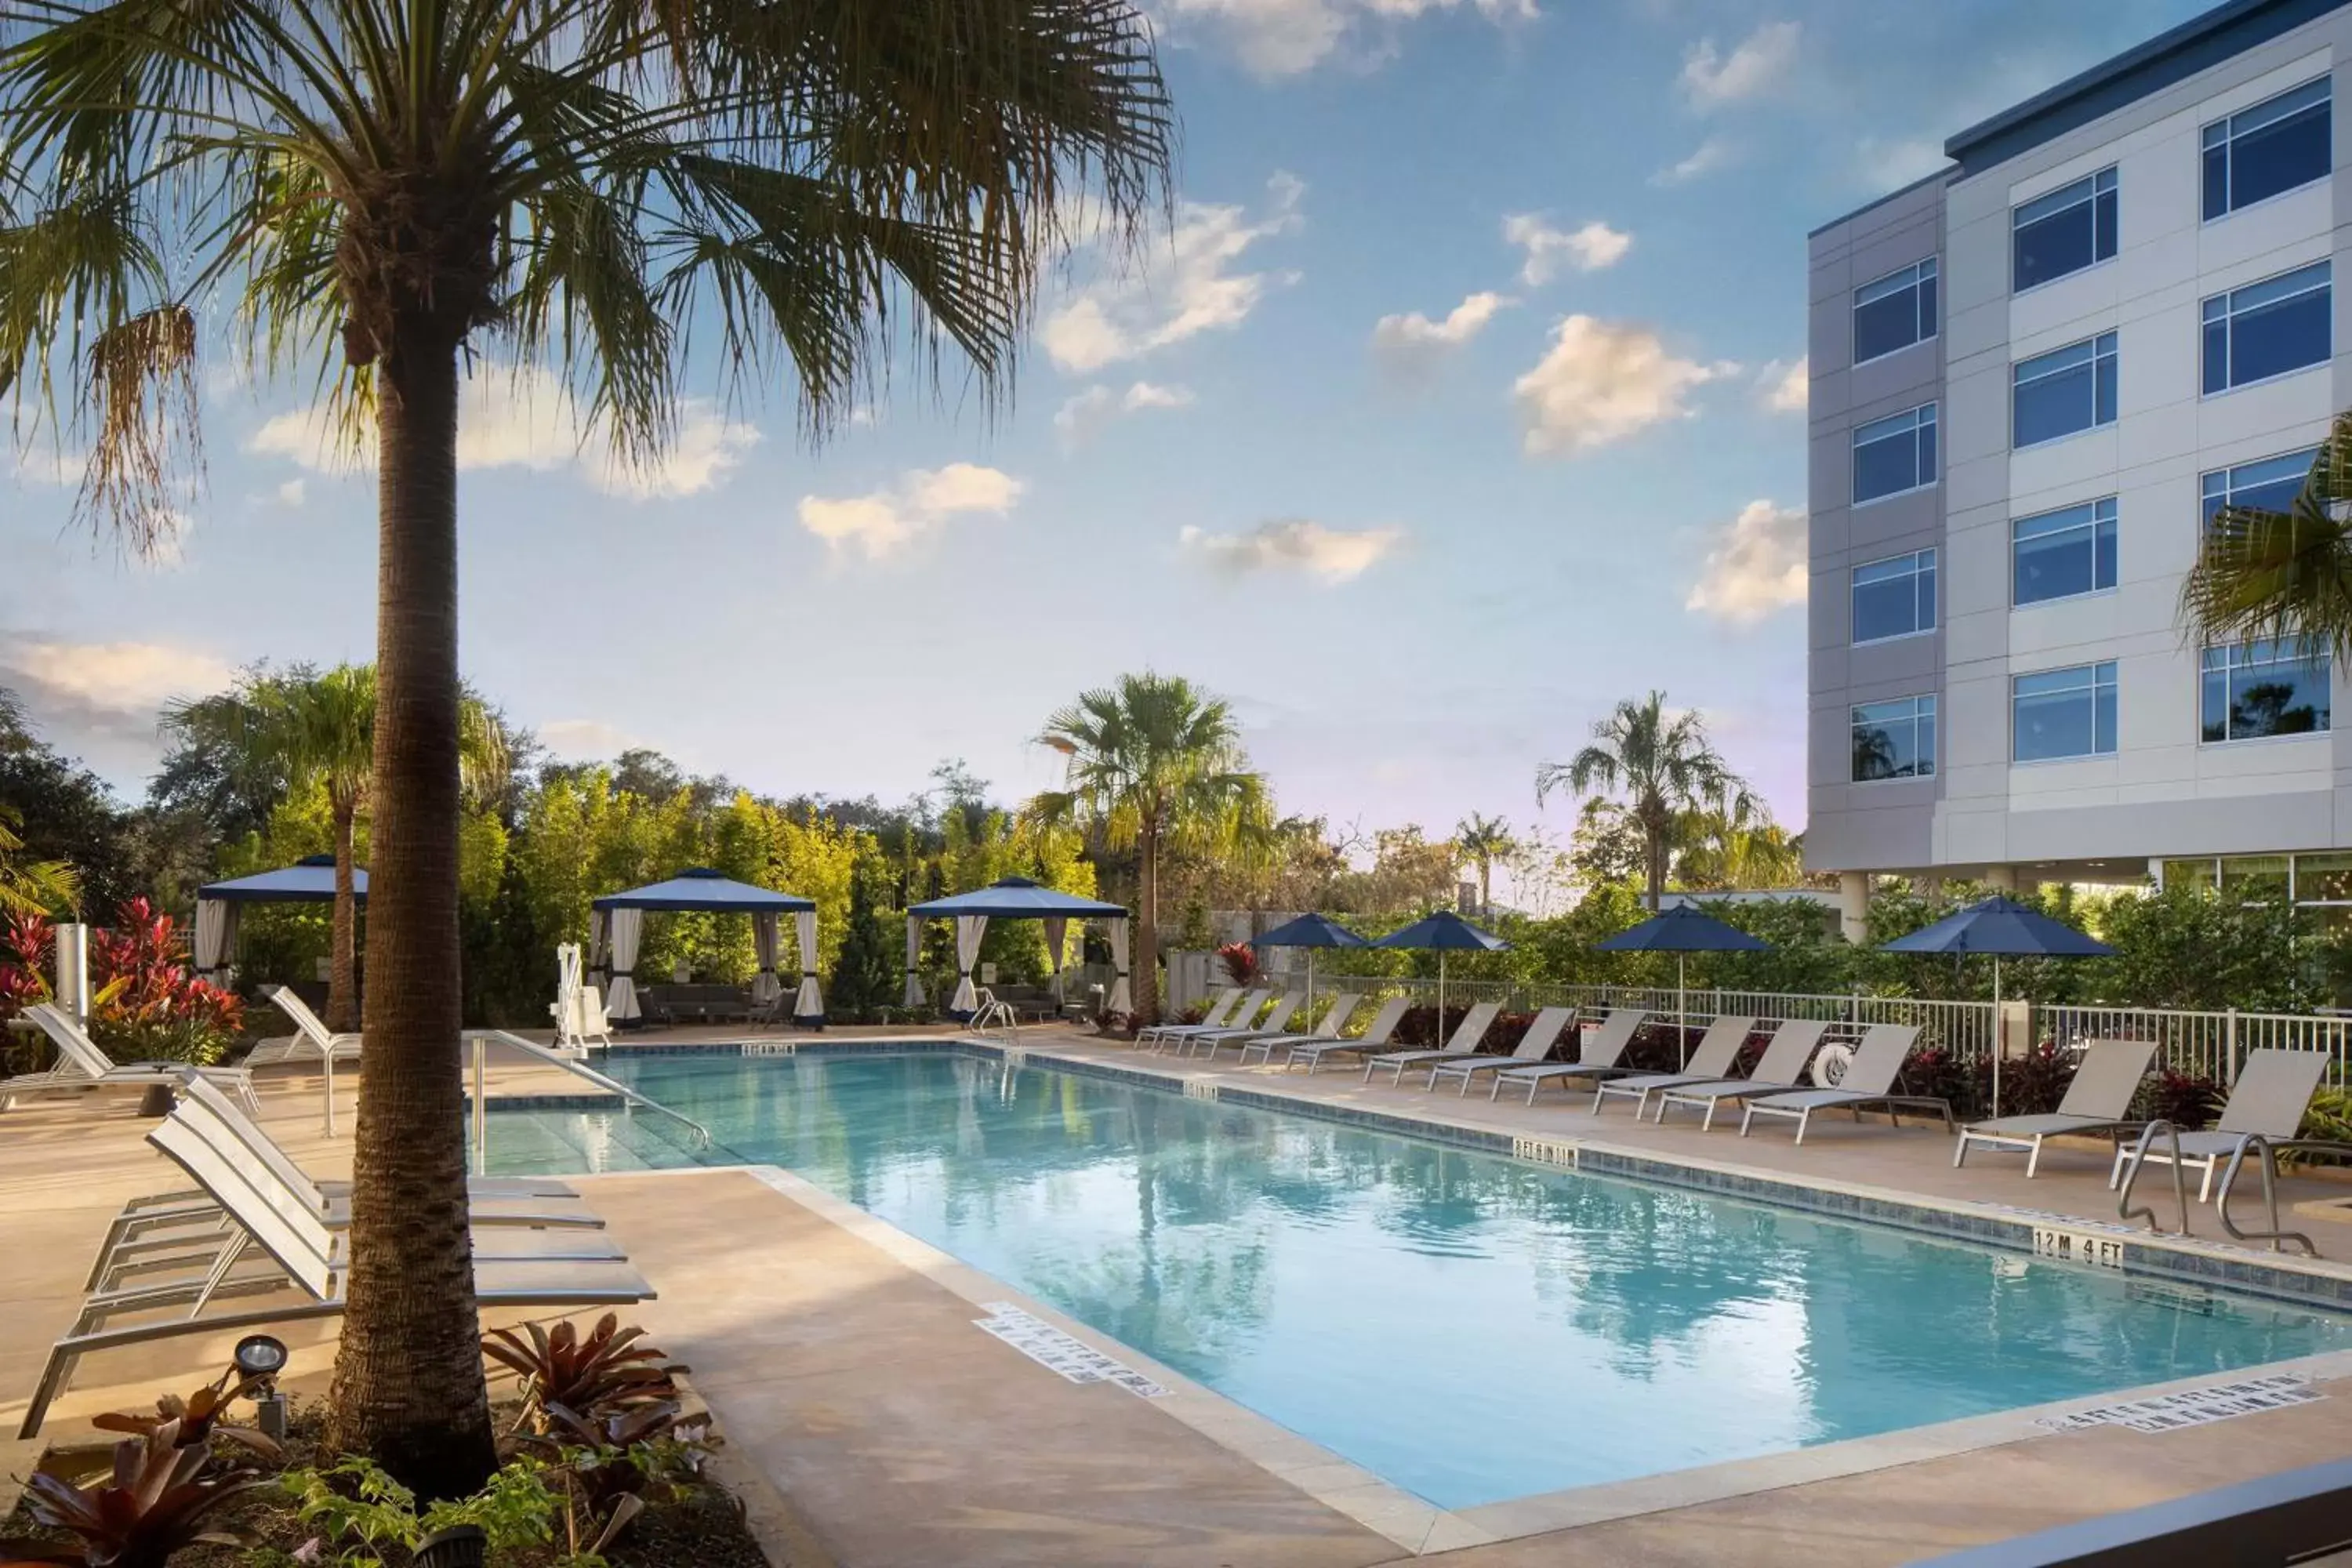 Swimming Pool in The Celeste Hotel, Orlando, a Tribute Portfolio Hotel